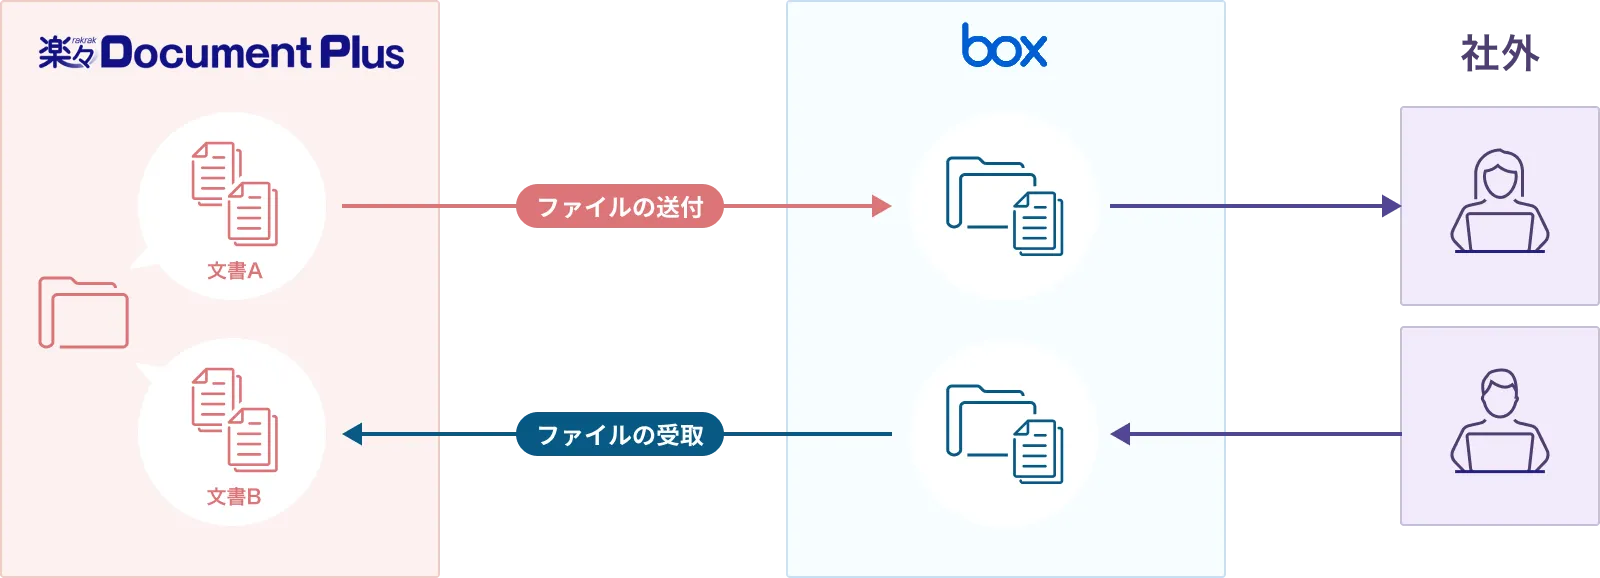 楽々Document PlusとBoxの連携